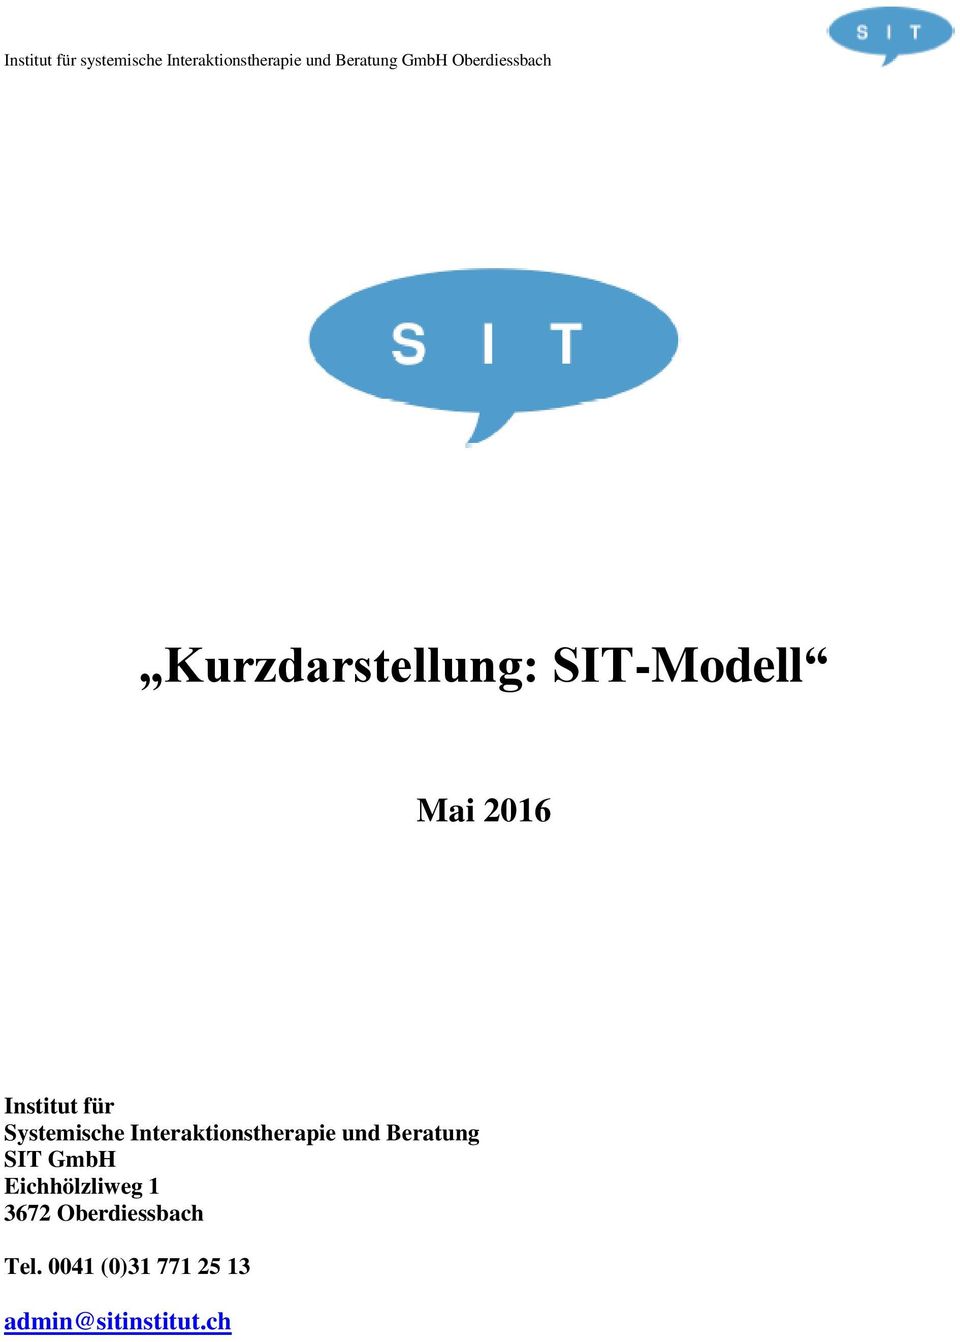 Beratung SIT GmbH Eichhölzliweg 1 3672